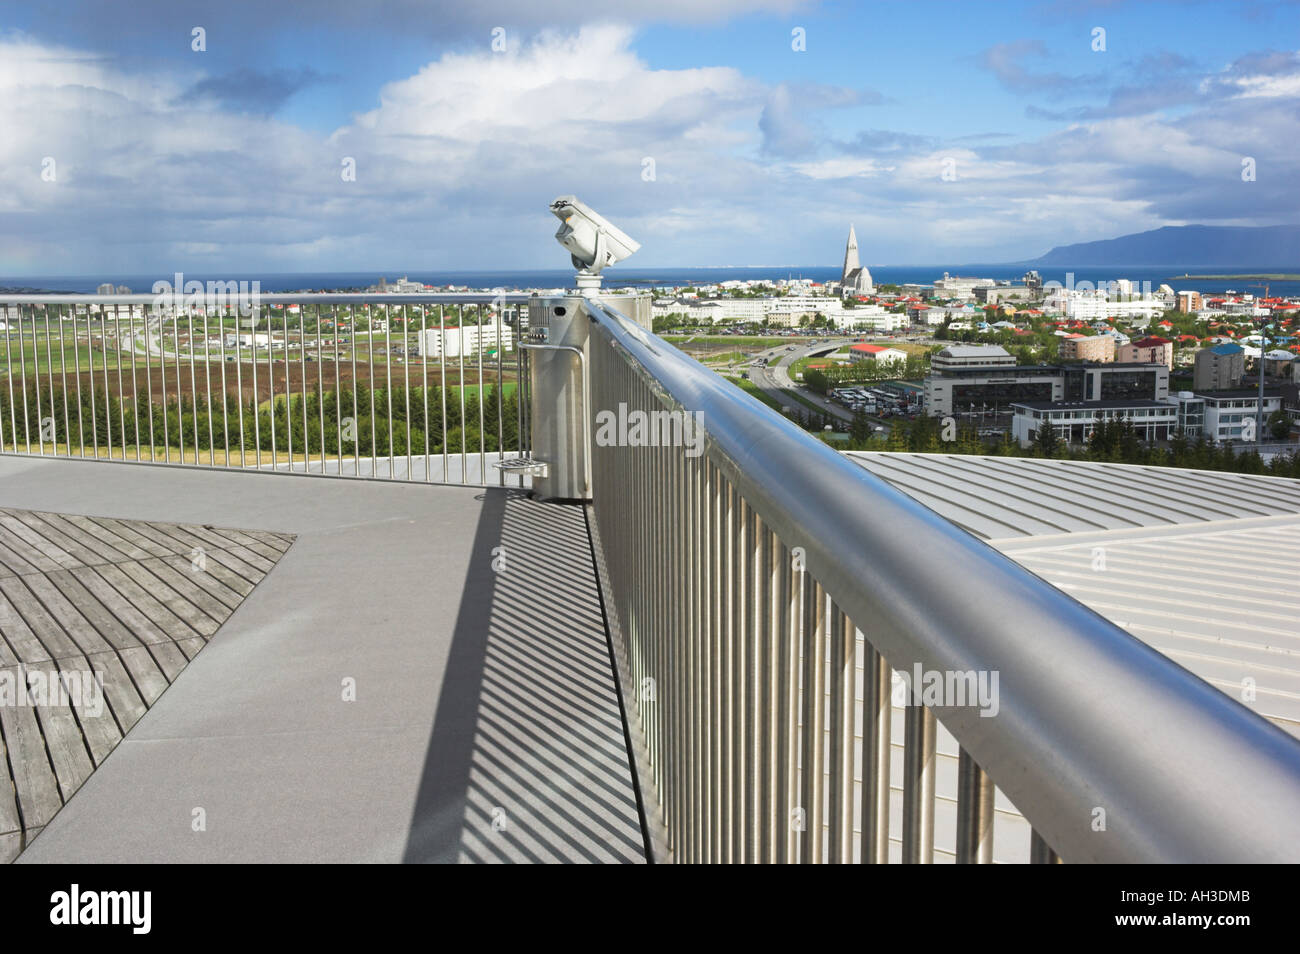 Vue sur la ville à partir de la plate-forme d'observation à l'extérieur de la coupole de verre perle Perlan Reykjavik Islande capitale eu Europe Banque D'Images